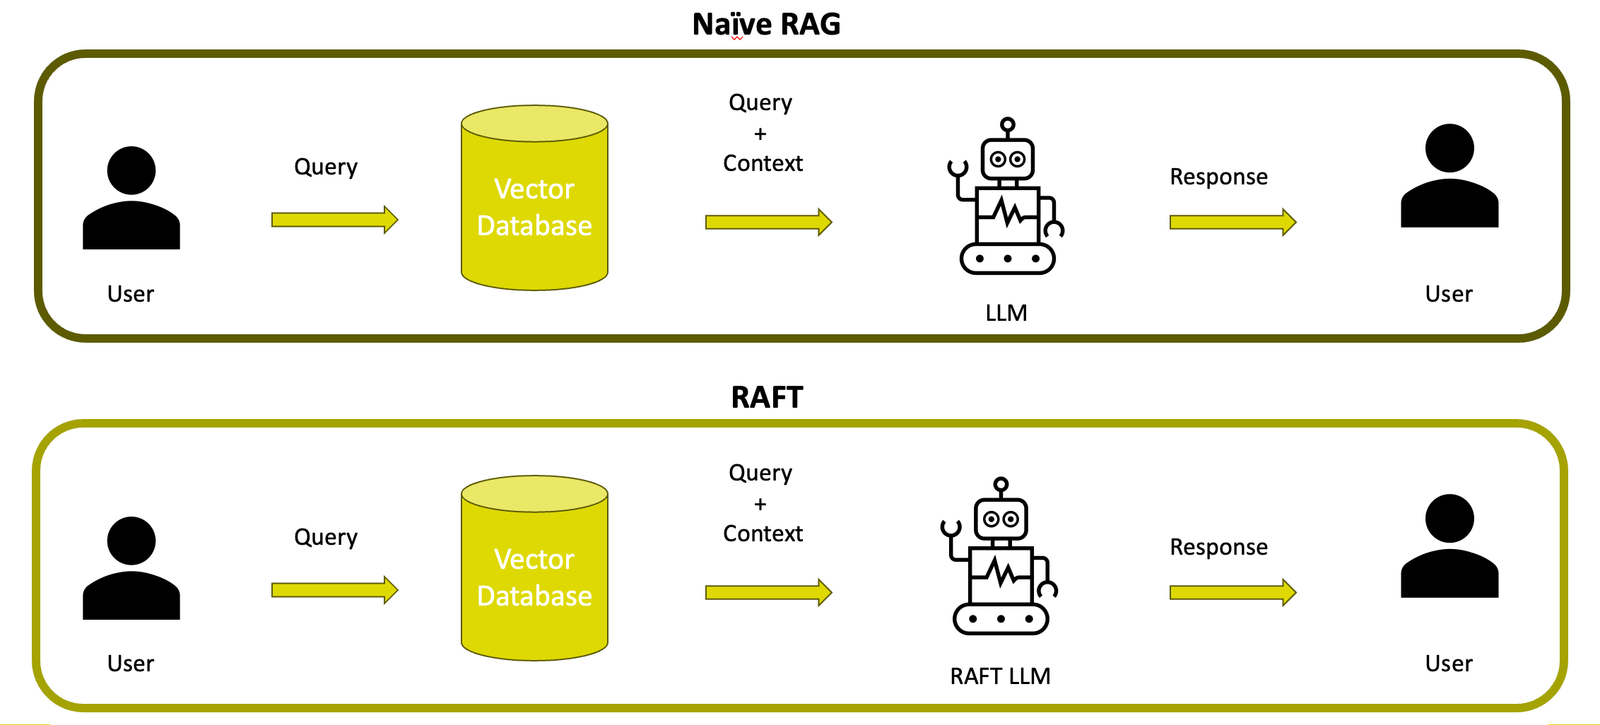 Diese Folie zeigt die Vergleiche zwischen dem traditionellen Retrieval Augmented Generation (Naives RAG) und dem fortschrittlicheren Retrieval Augmented Fine Tuning (RAFT). Das Diagramm illustriert, wie das LLM im RAFT-Modus eine spezifischere und kontextuell angepasste Antwort generiert, indem es sowohl eine Vektordatenbank für den Abruf relevanter Informationen als auch spezifische Feinabstimmungstechniken nutzt, um präzisere Antworten zu liefern.